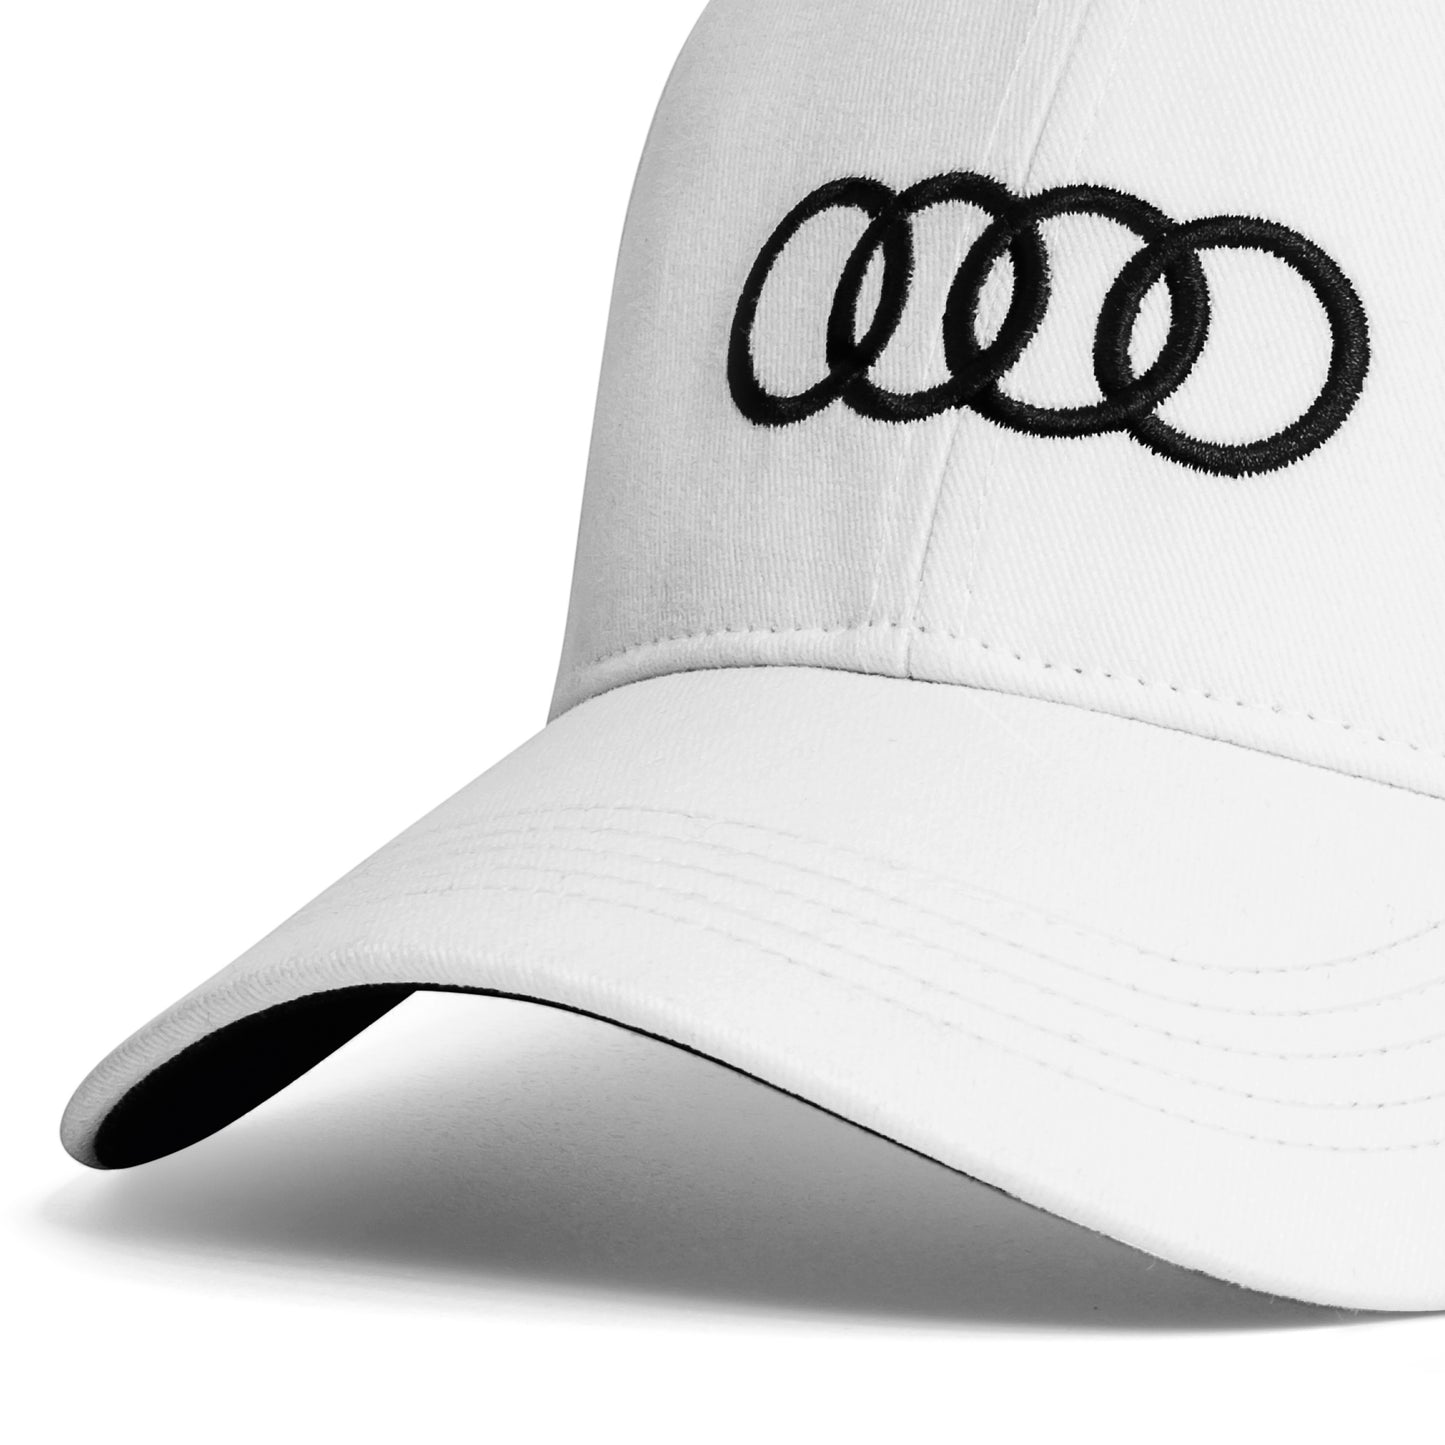 Cappellino Audi bianco